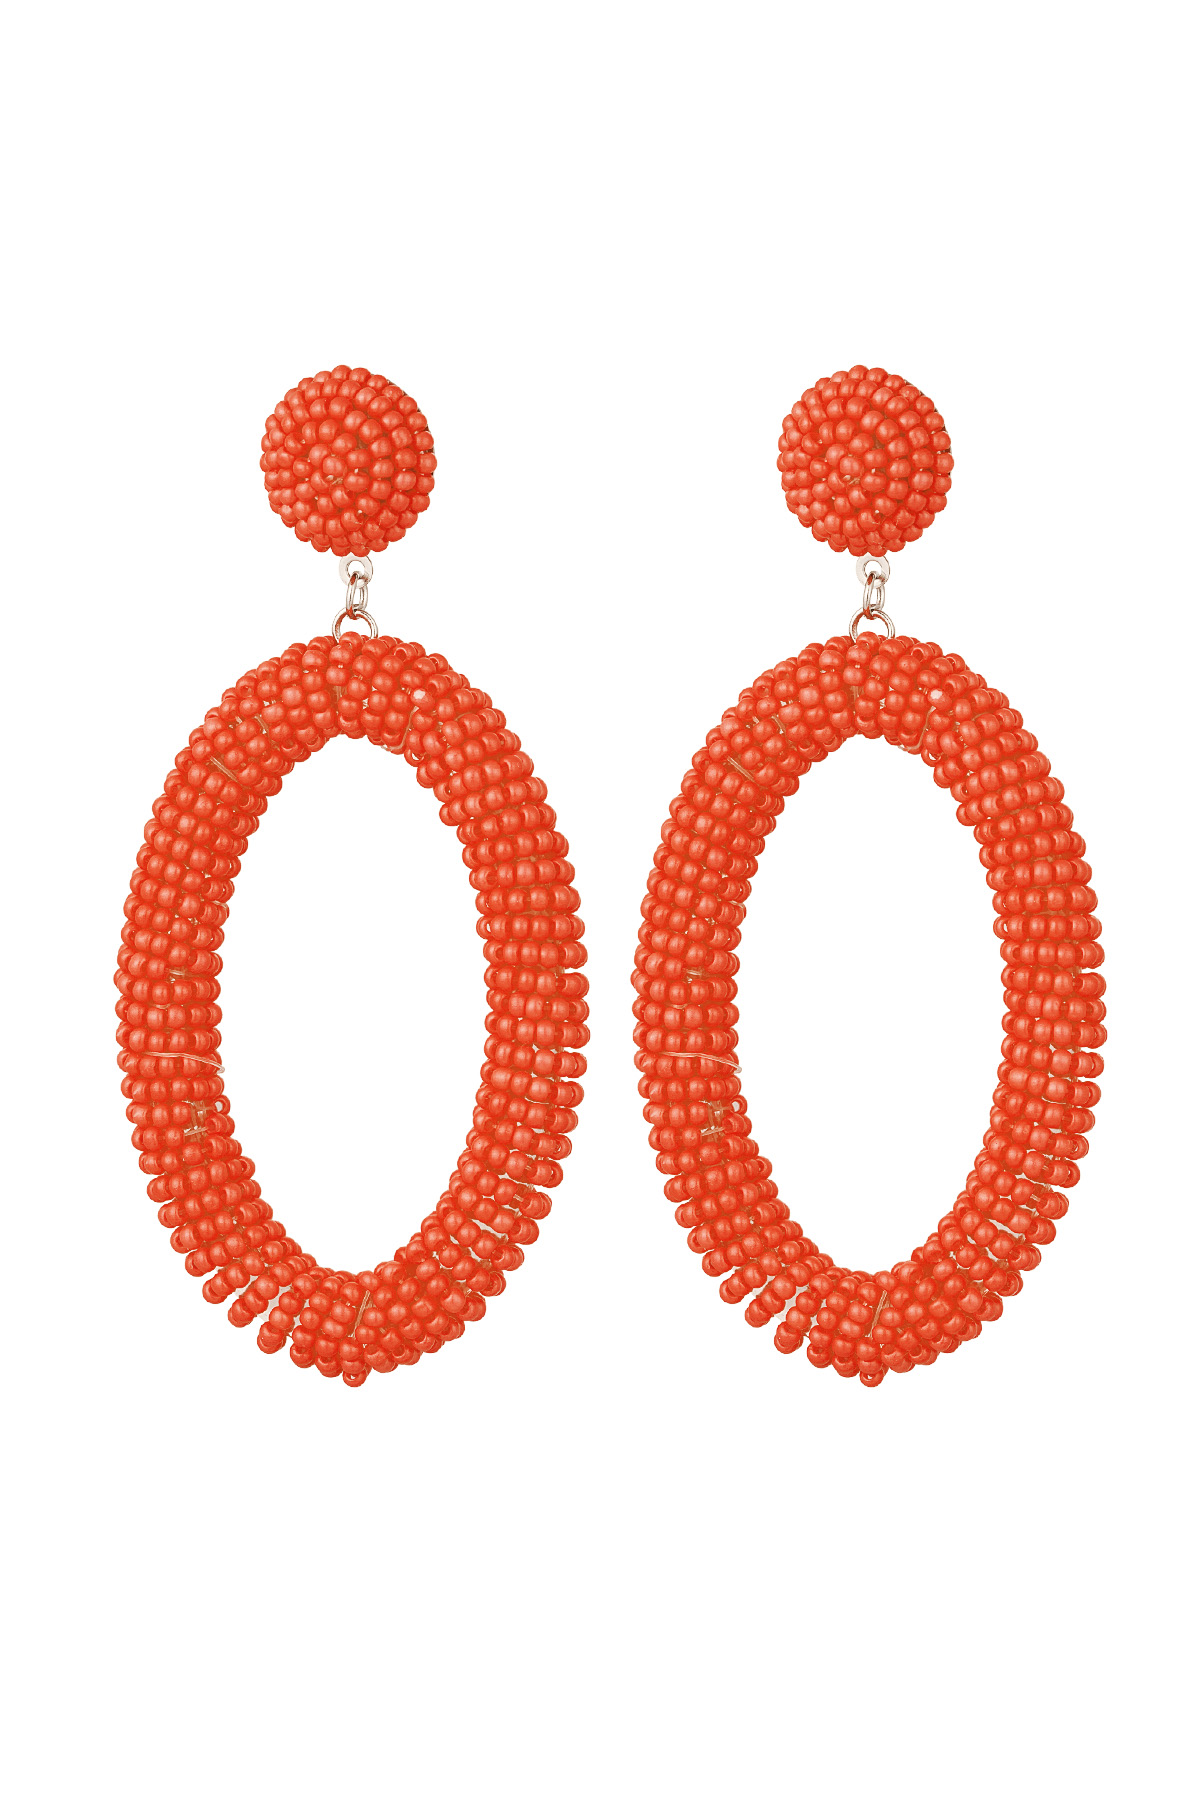 Orecchini perline caramelle allungate - arancio Acciaio inossidabile